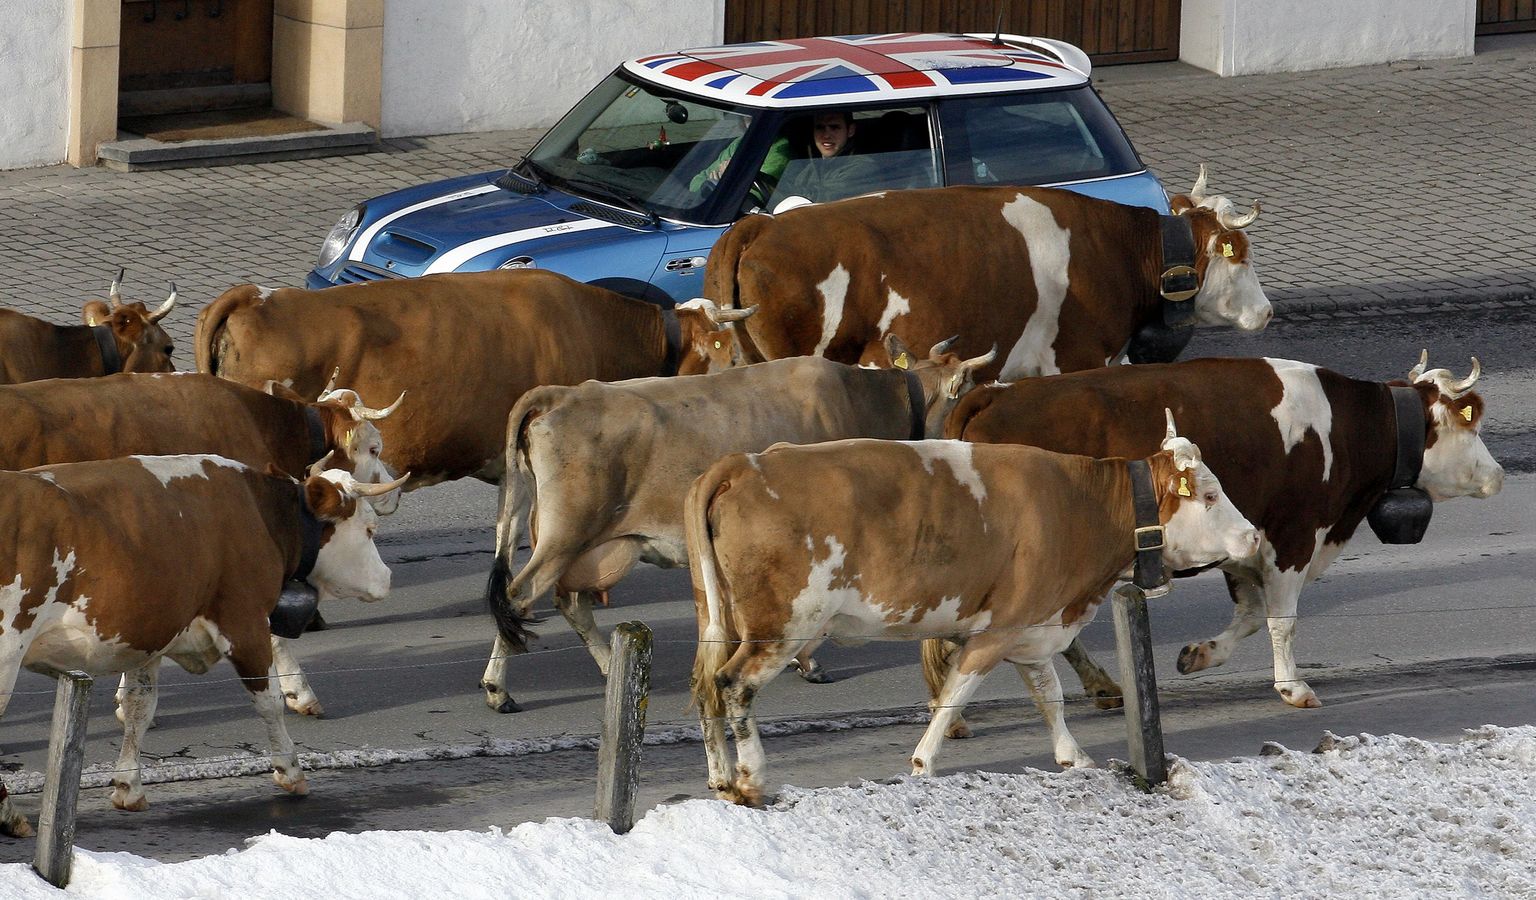 Briti teadlased selgitasid välja, et lehmad, keda kutsutakse nimepidi, annavad rohkem piima.